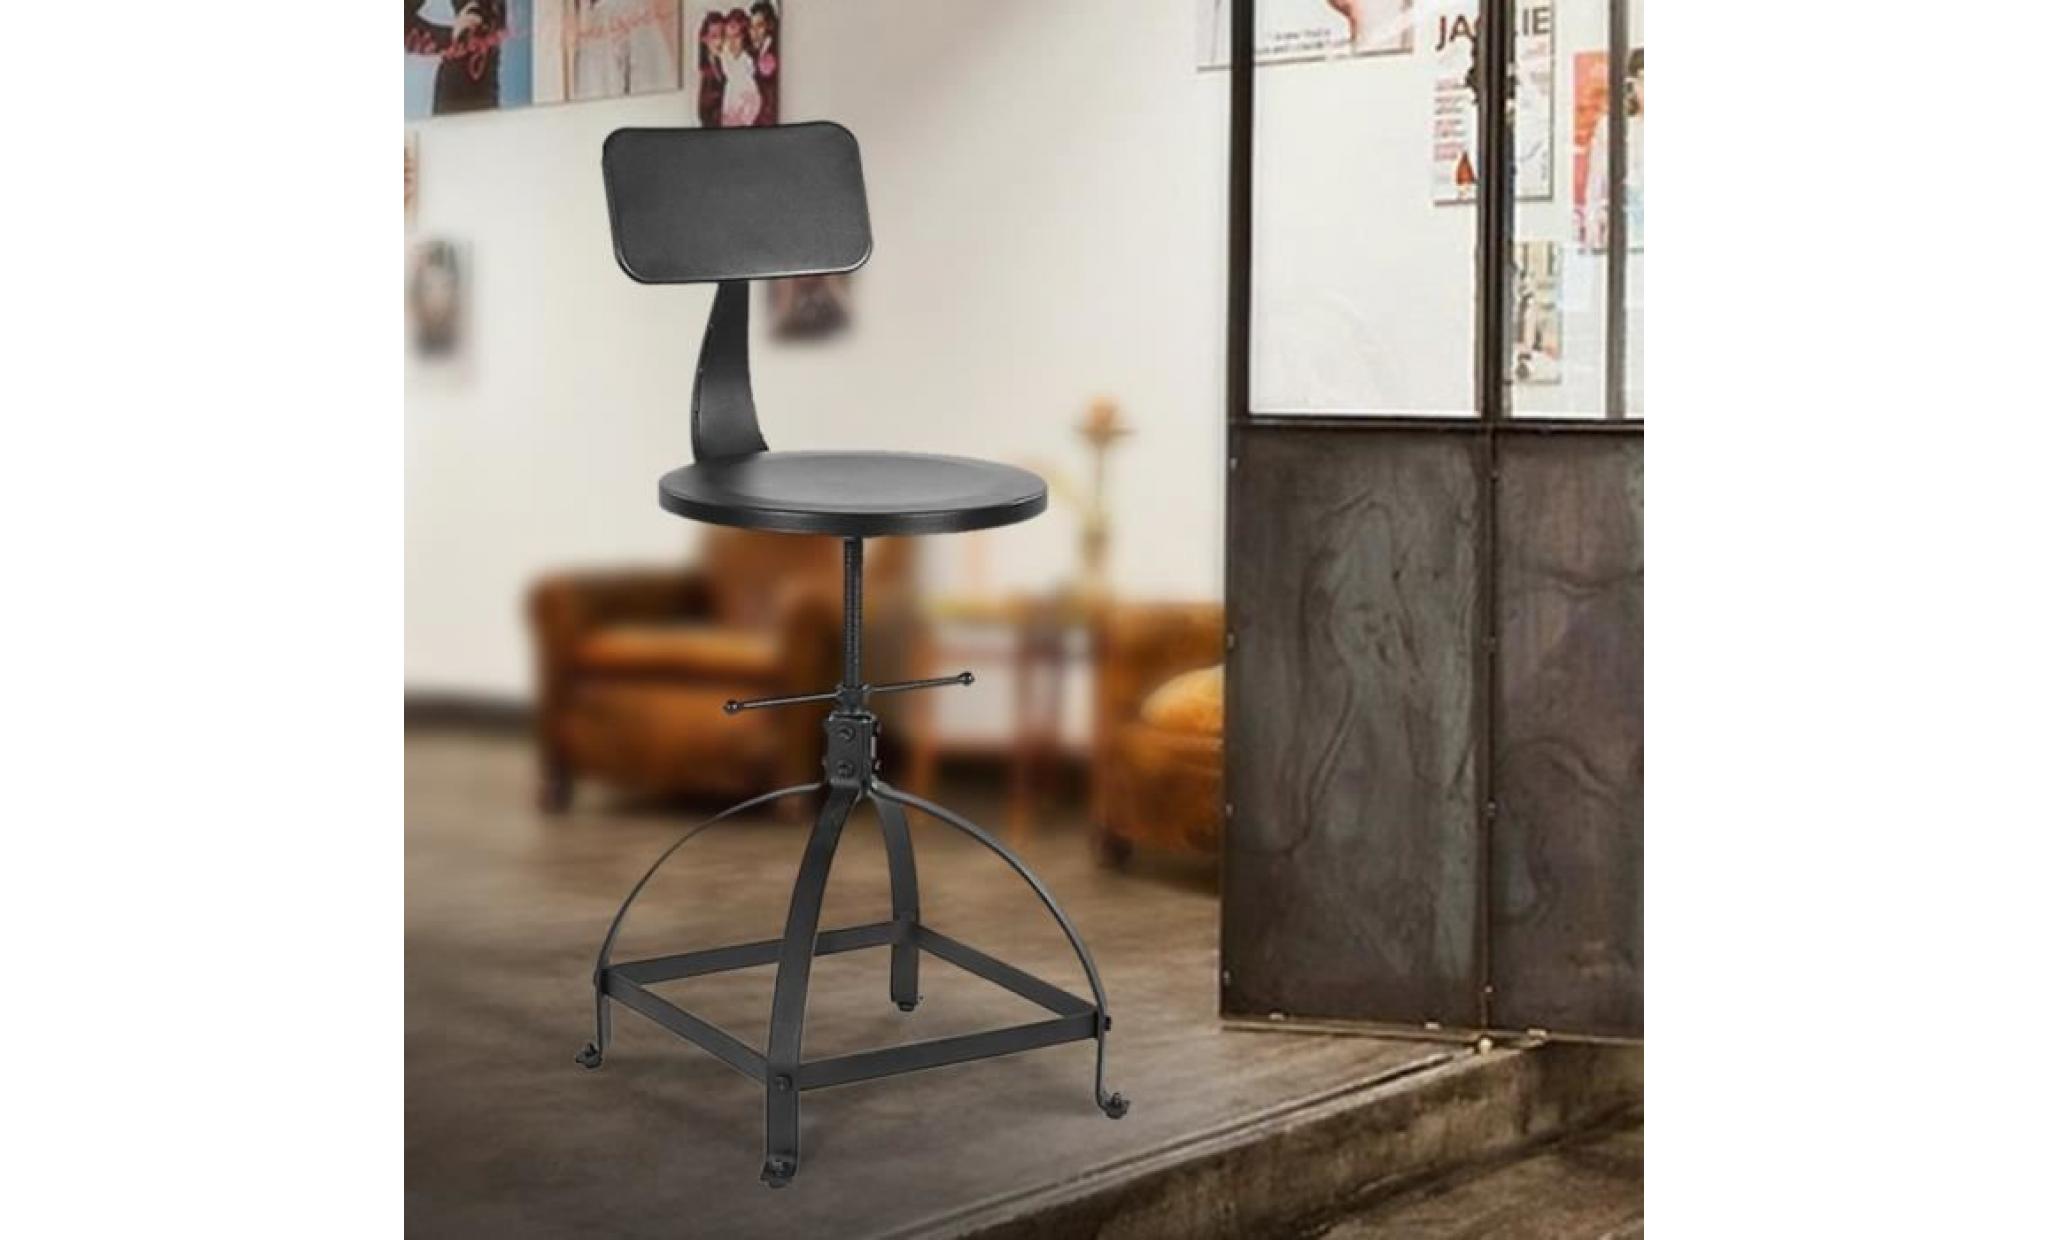 ikayaa tabouret de bar en métal ajustable hauteur avec dossier style industriel capacité max 100kg chaise à manger cuisine 44 * 38 pas cher